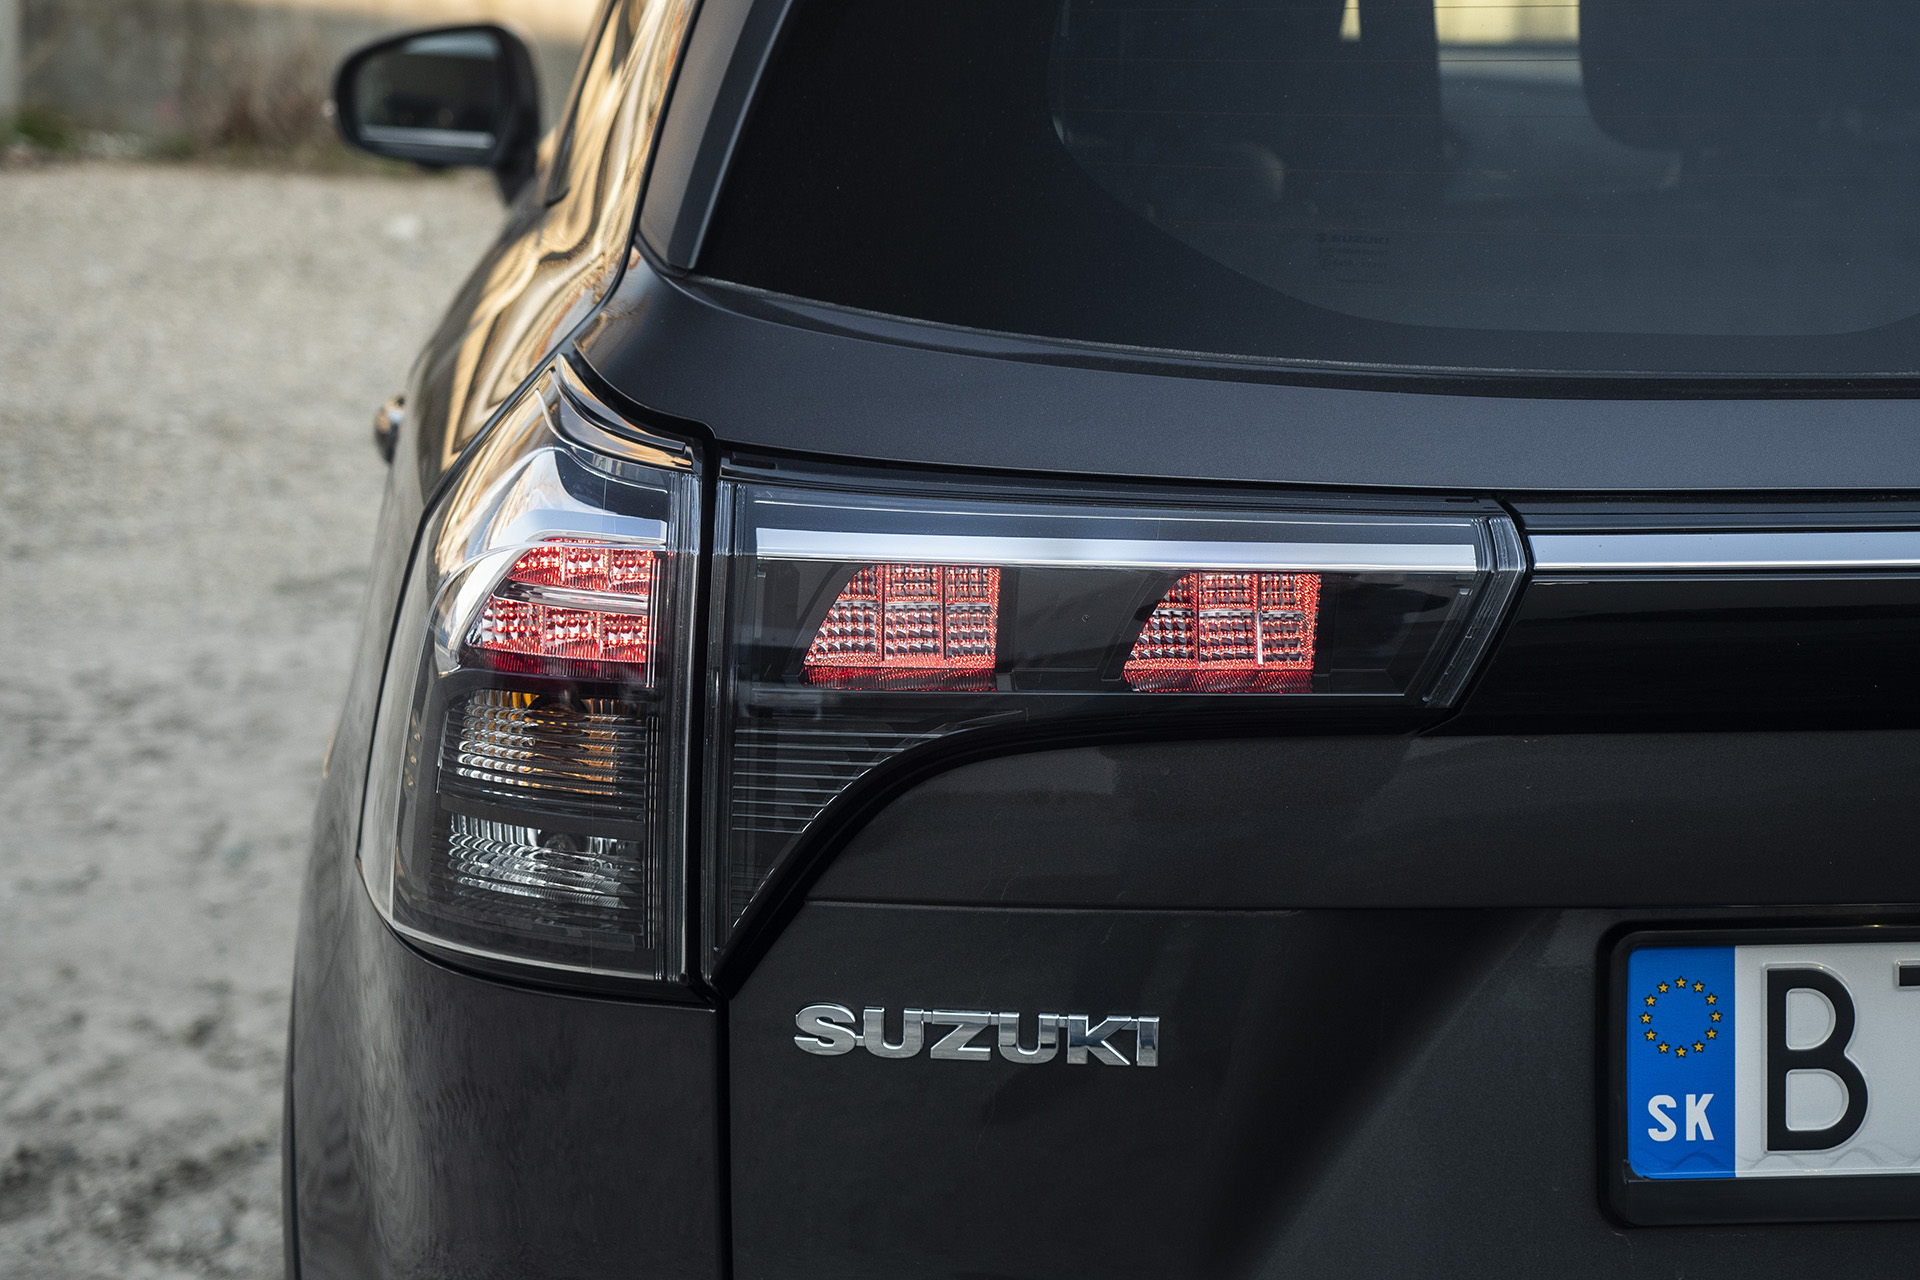 Test: Suzuki S-Cross – Hrdina v každodennom nasadení